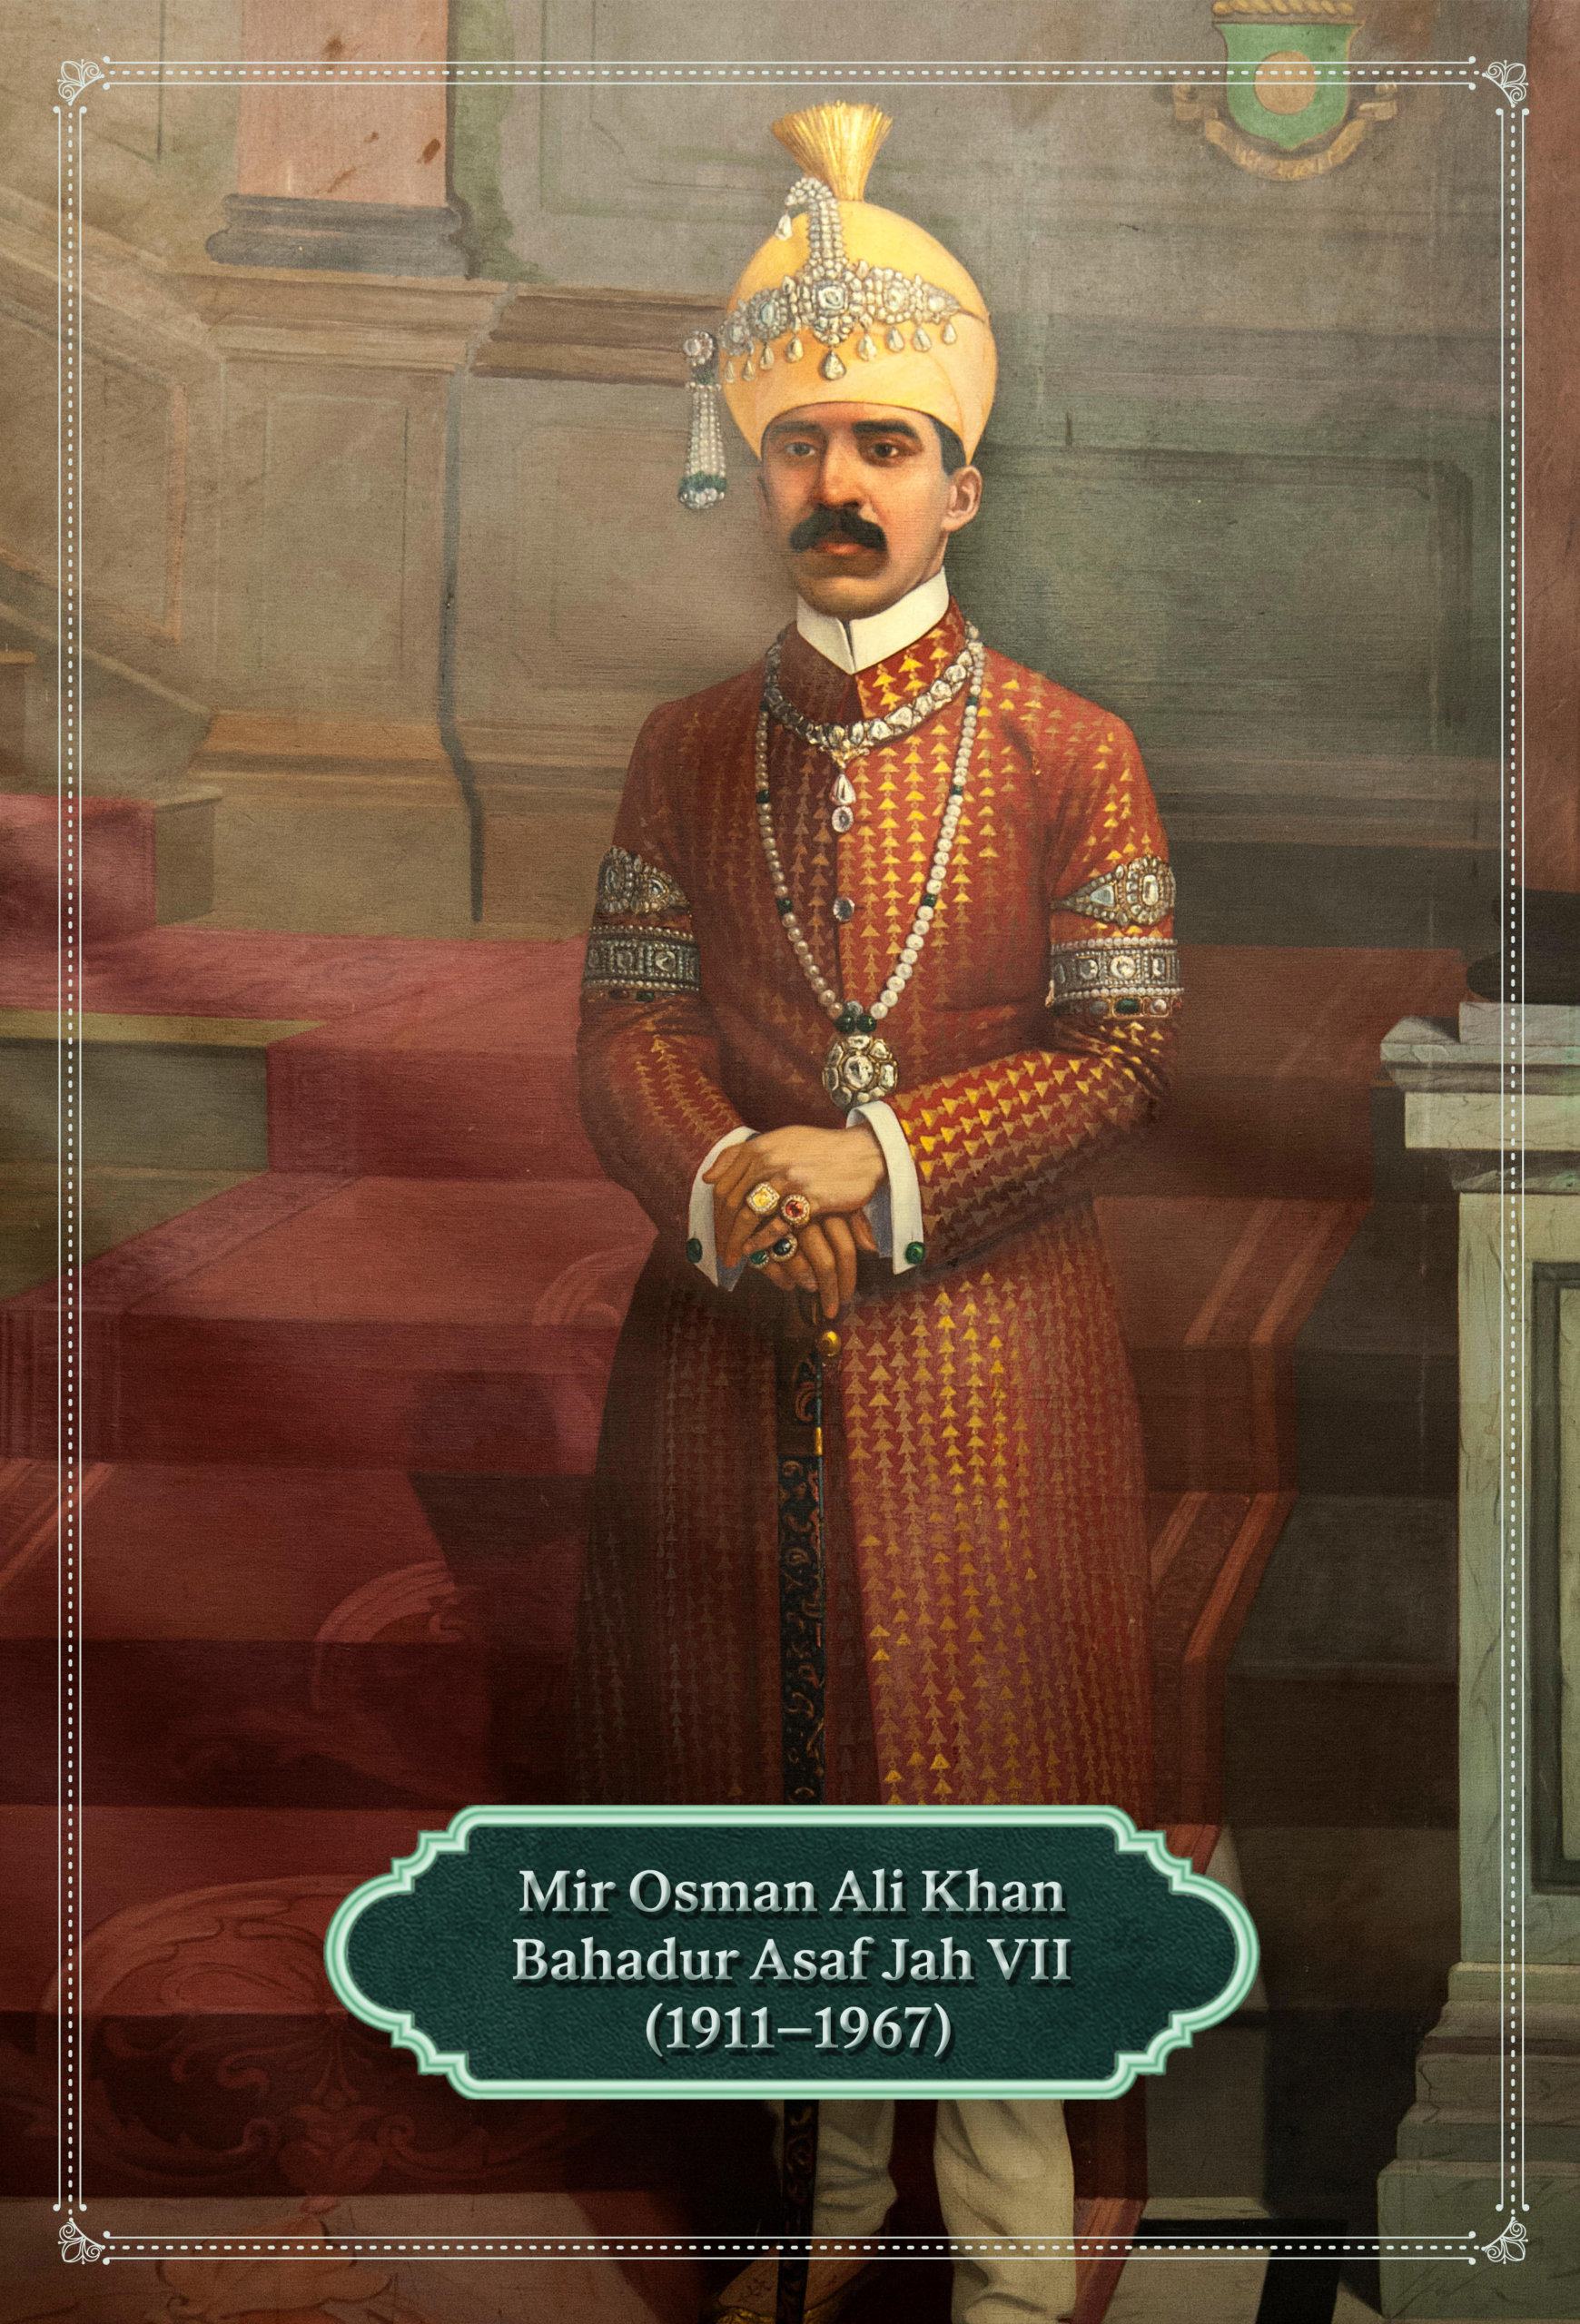 Mir Osman Ali Khan Bahadur Asaf Jah VII